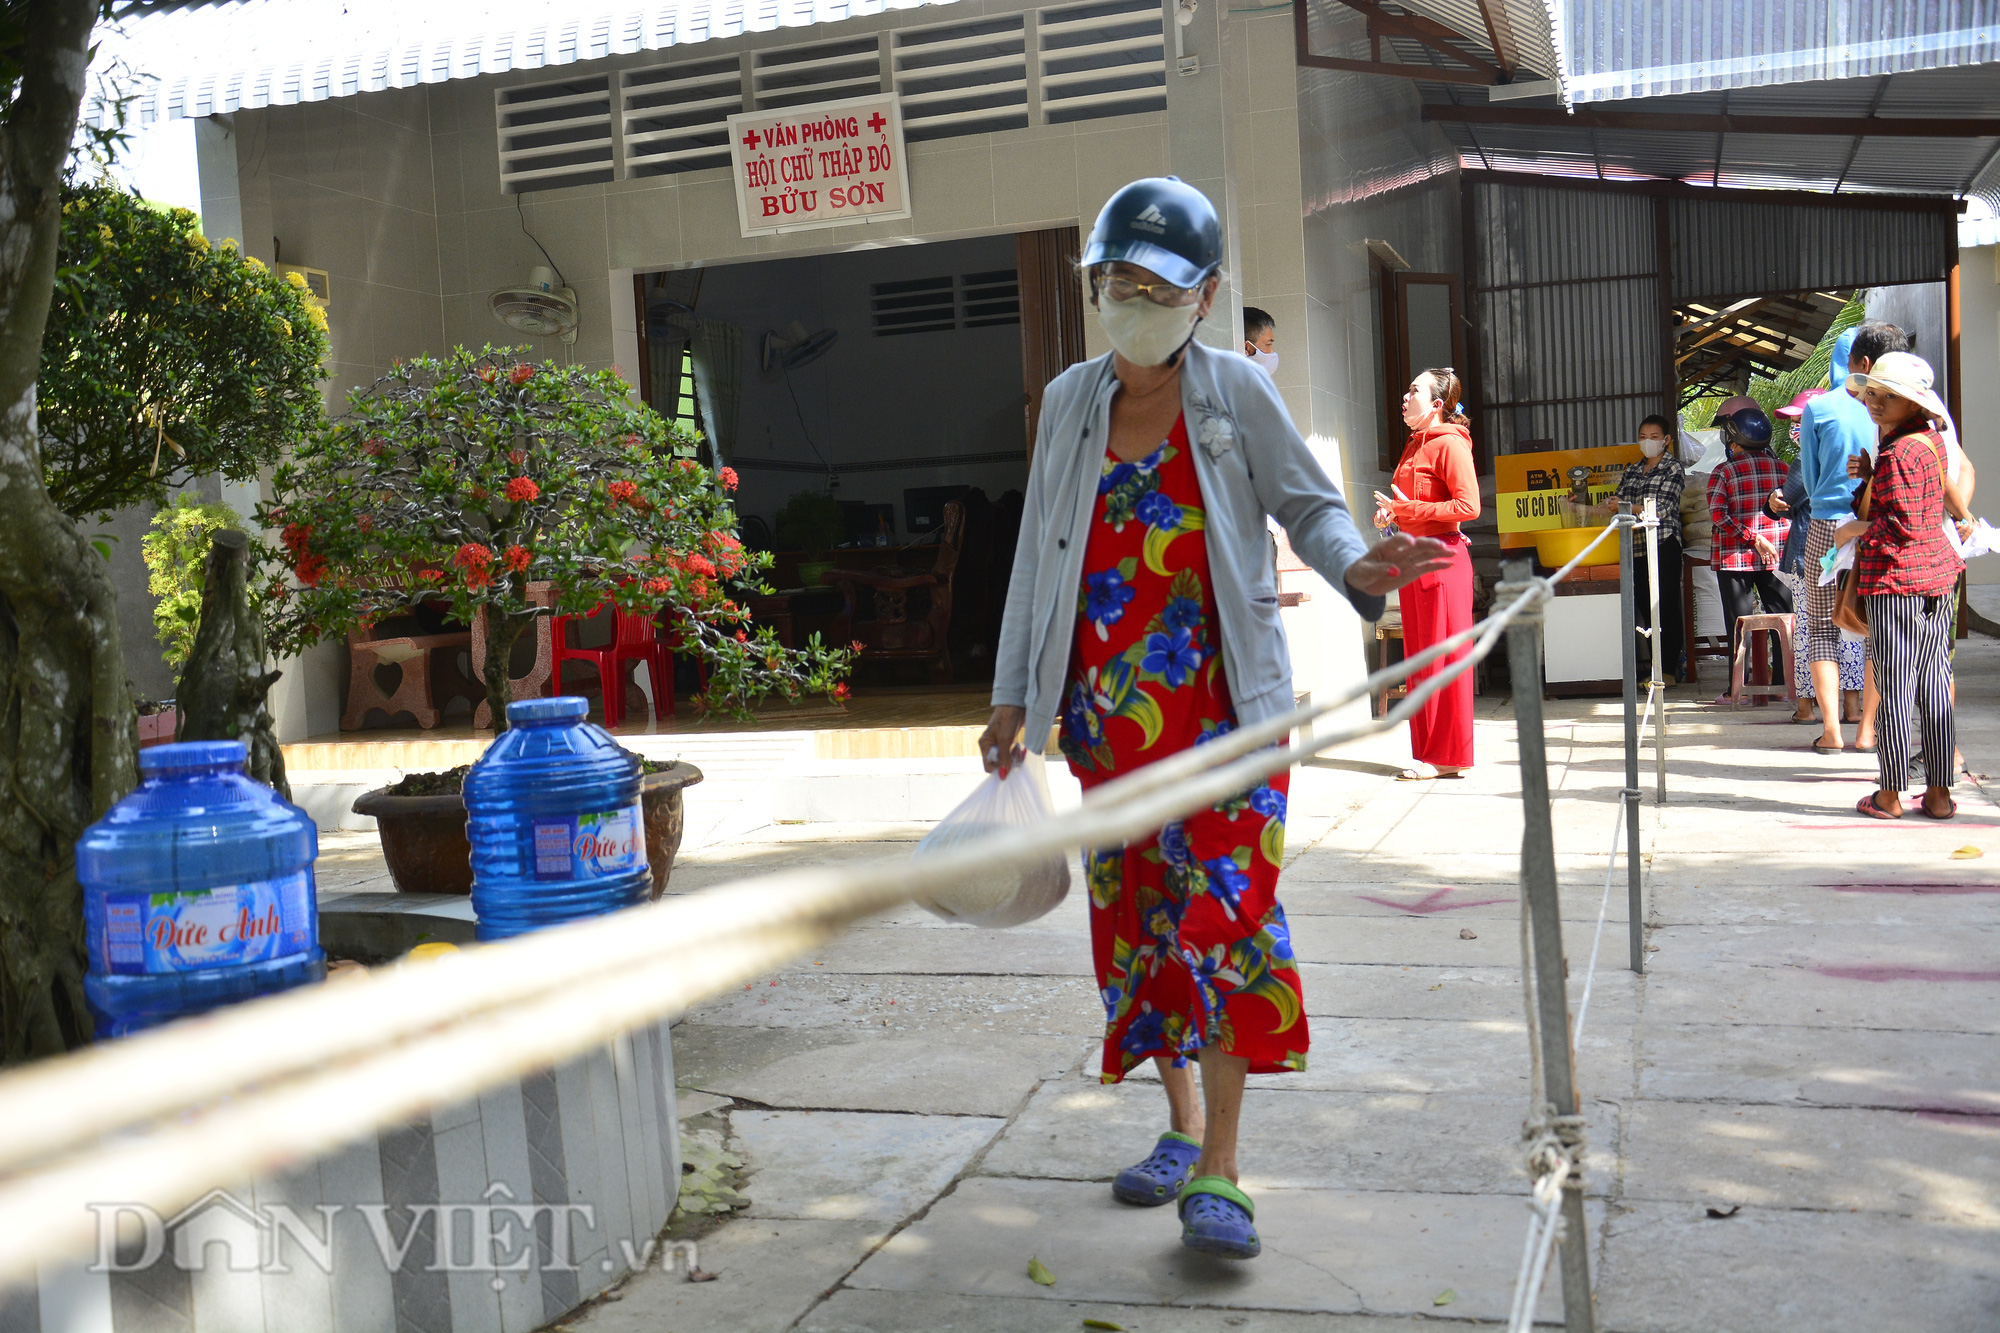 Kiên Giang: “ATM gạo” về vùng nông thôn, dân nghèo đỡ khổ - Ảnh 10.